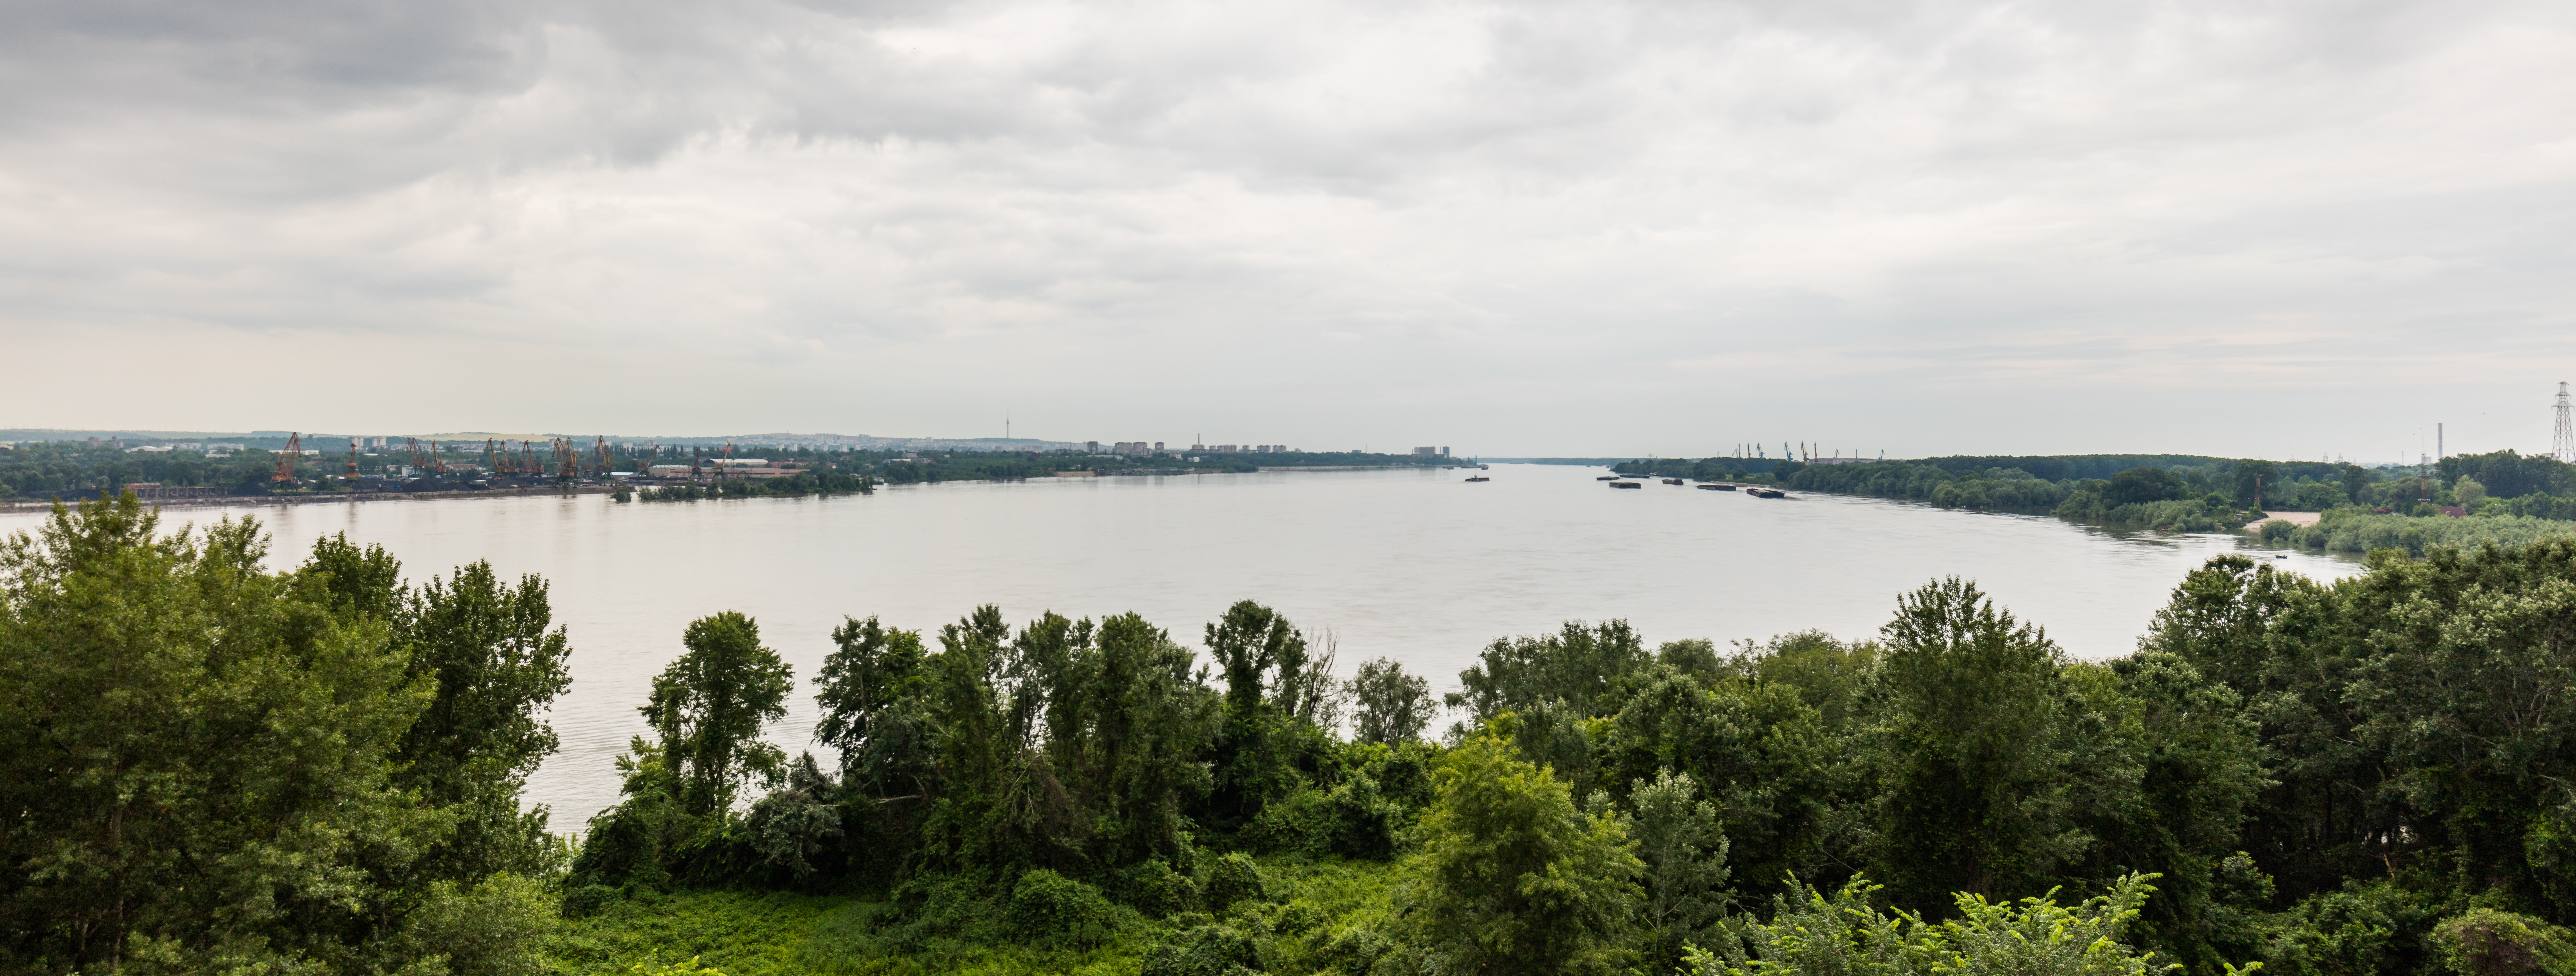 File:Danubio a su paso por Ruse, Bulgaria, 2016-05-27, DD 01.jpg ...